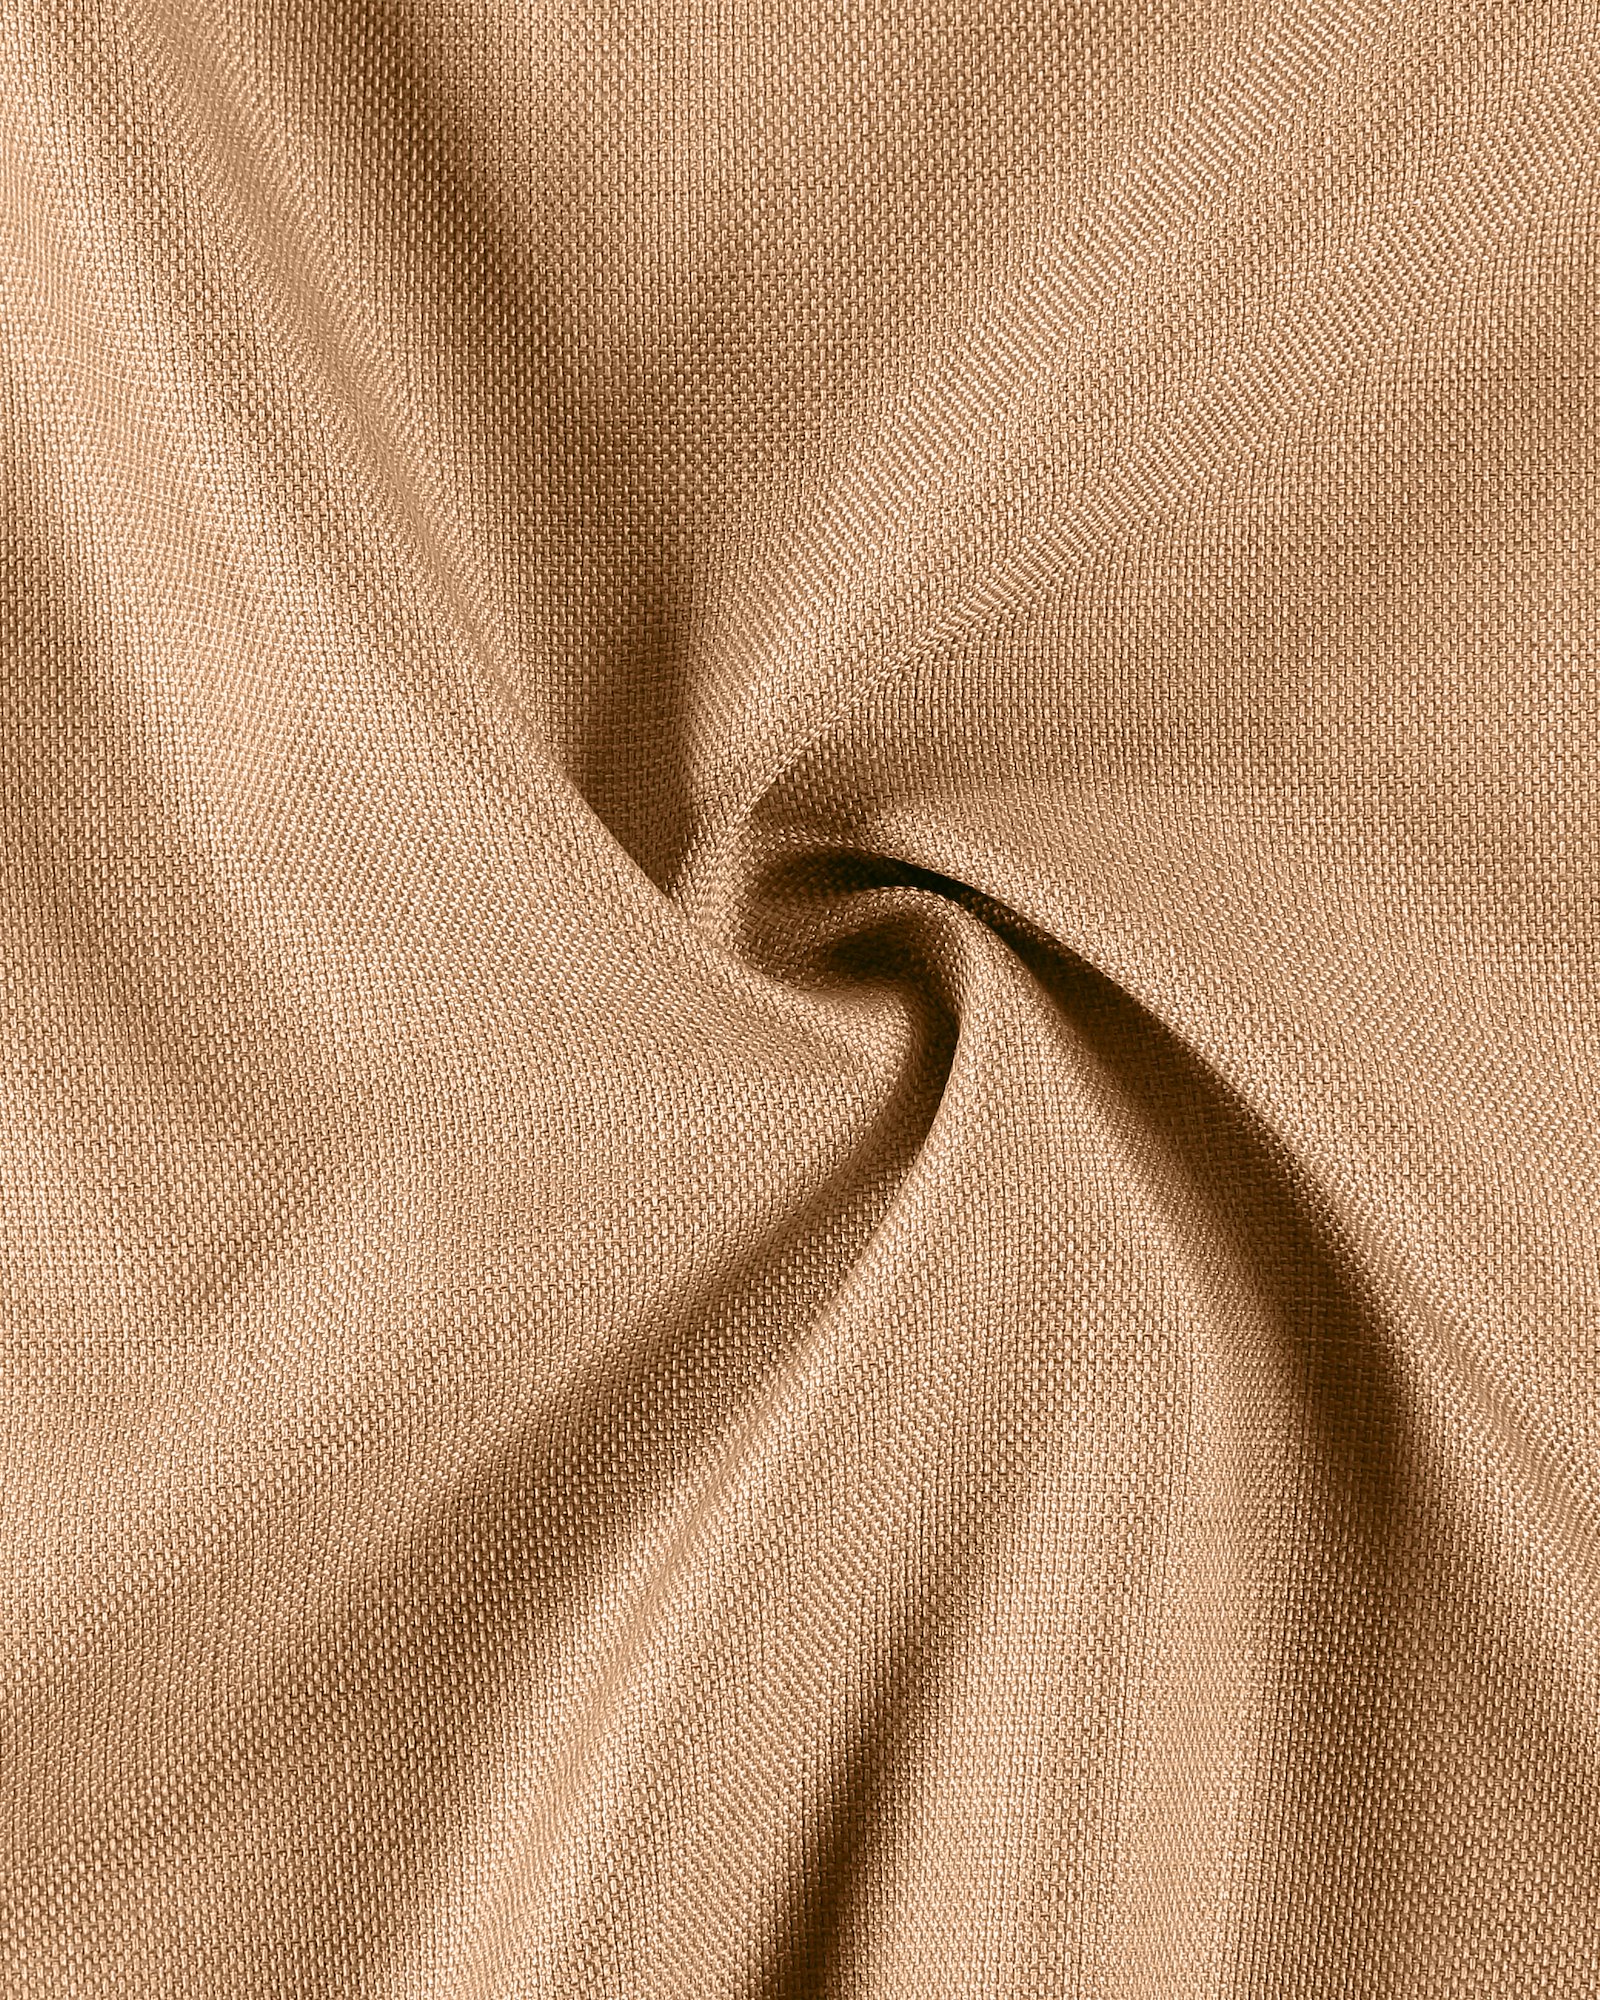 Upholstery fabric light terracotta mel. 826219_pack